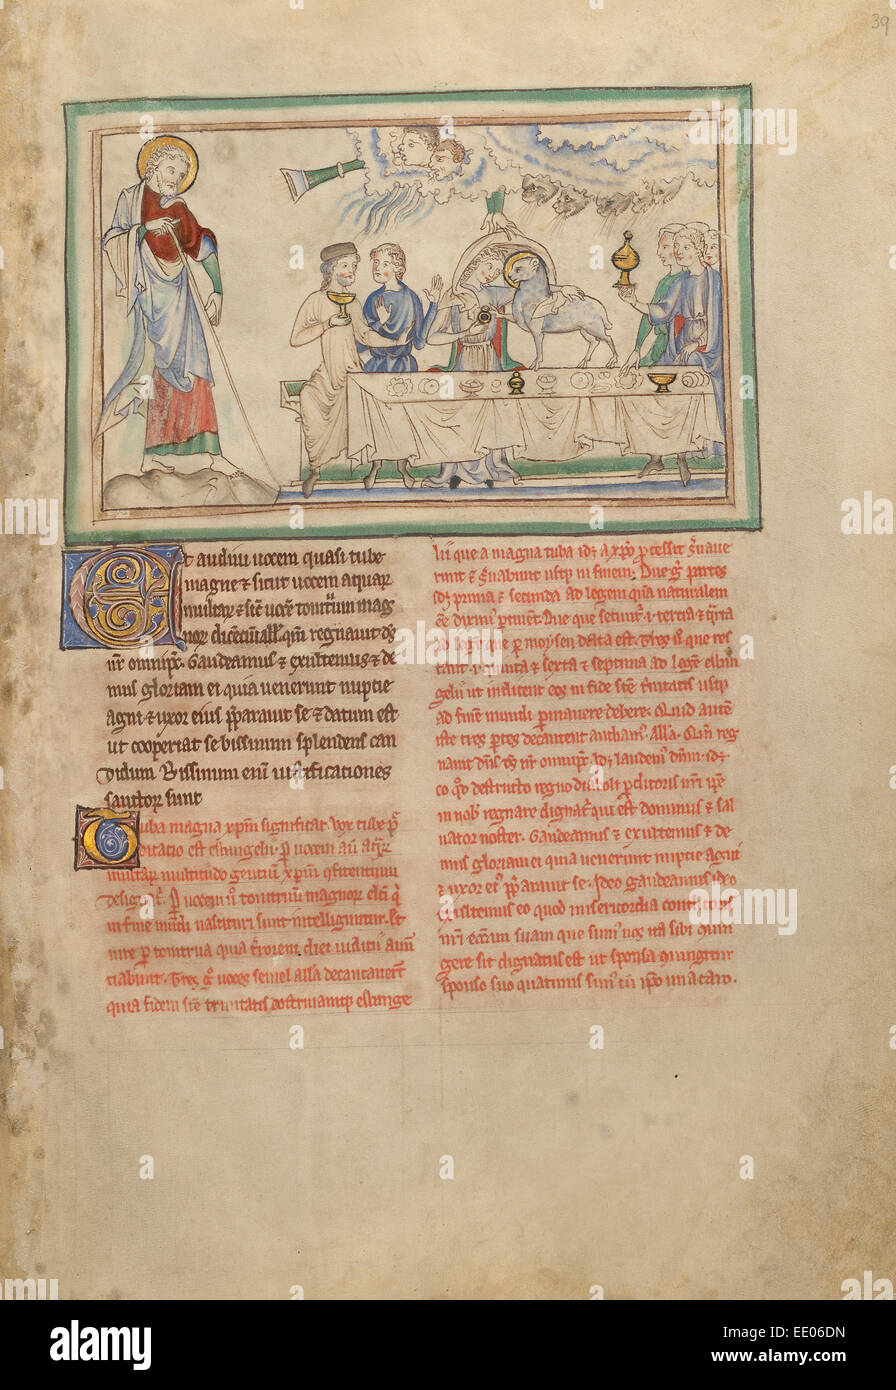 Le nozze dell'Agnello; sconosciuta; Londra (probabilmente), l'Inghilterra, l'Europa; circa 1255 - 1260; tempere, foglia oro Foto Stock